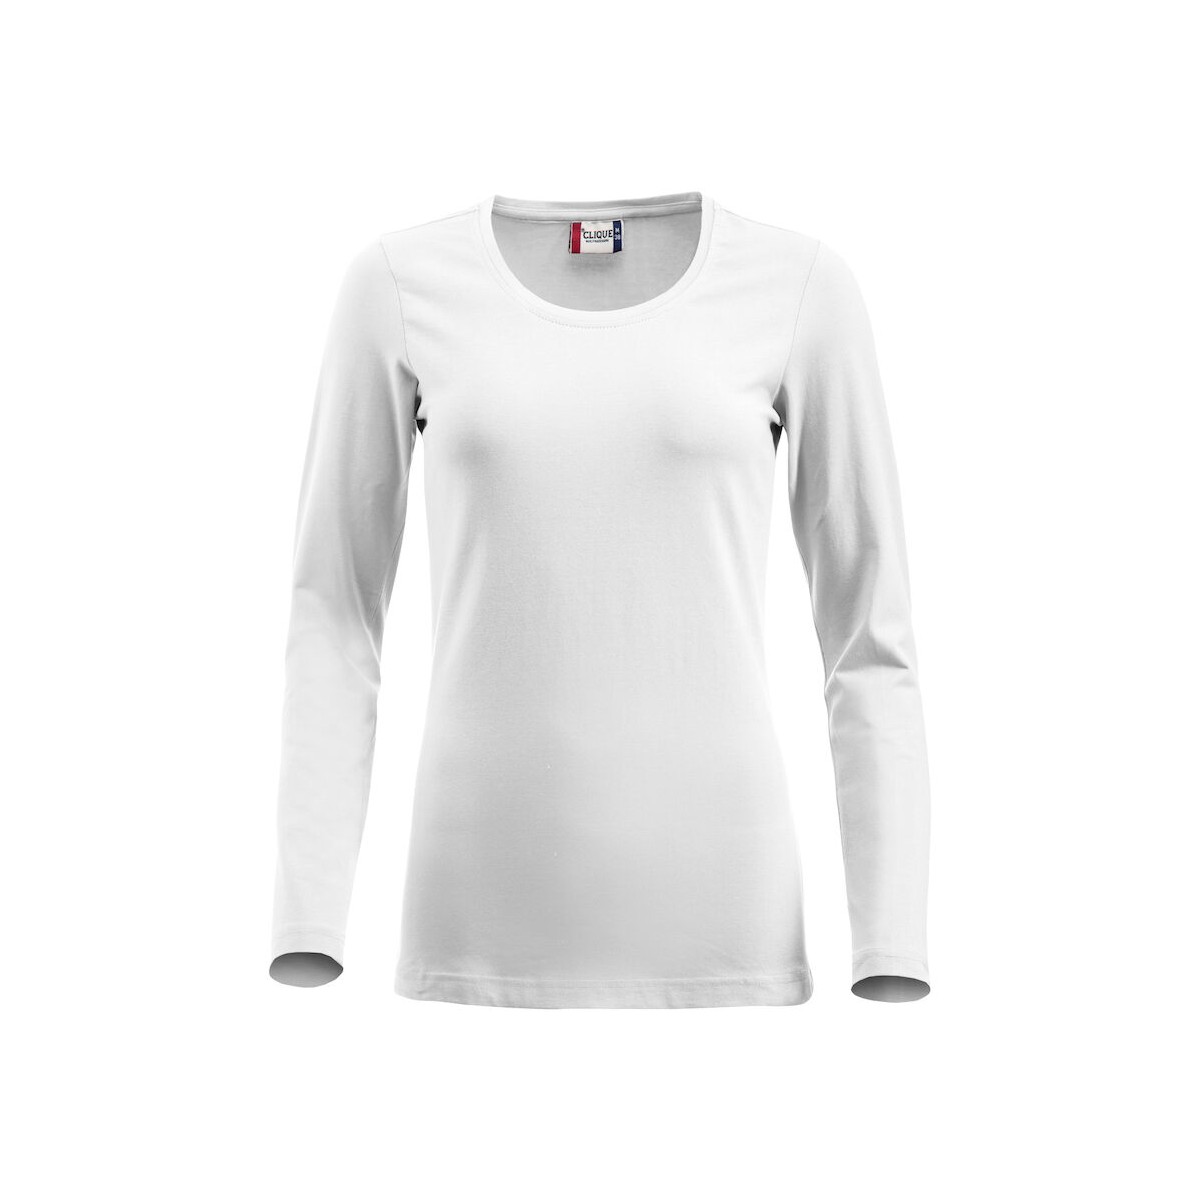 T-shirt Femme - Coupe longue - Manches longues - CLIQUE - Couleur blanc - Personnalisable en petite quantité